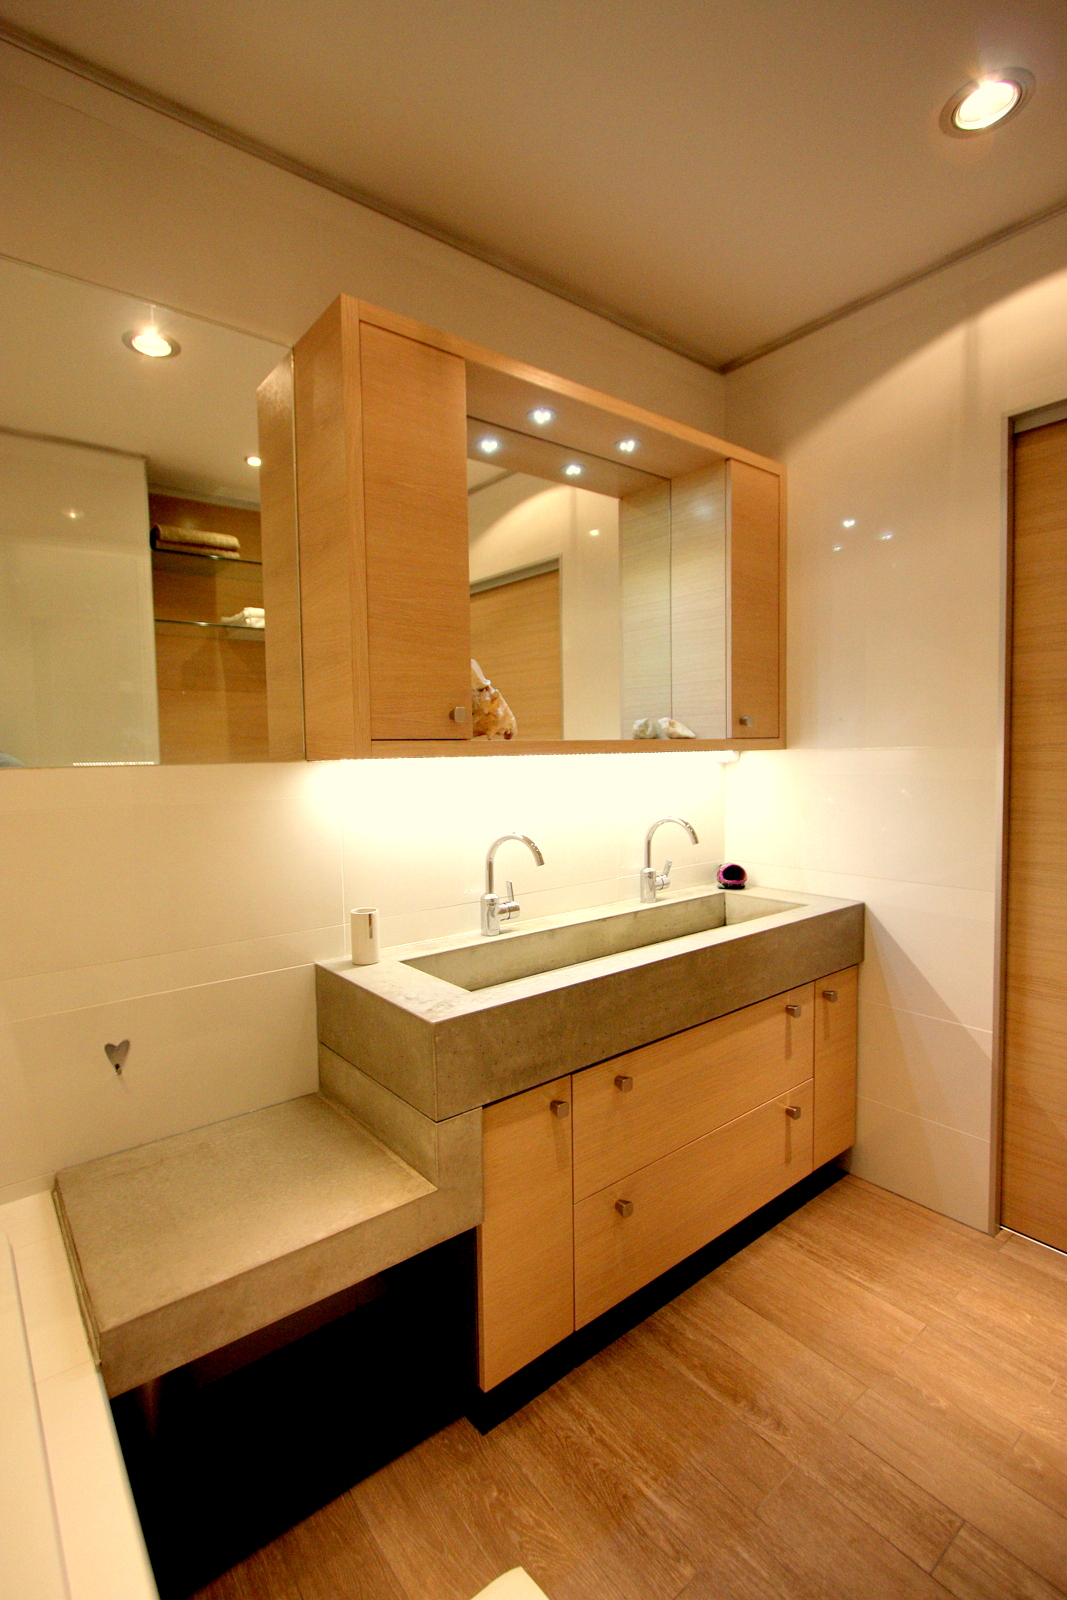 Fürdőszoba beton mosdóval / Concrete lavatory - bathroom